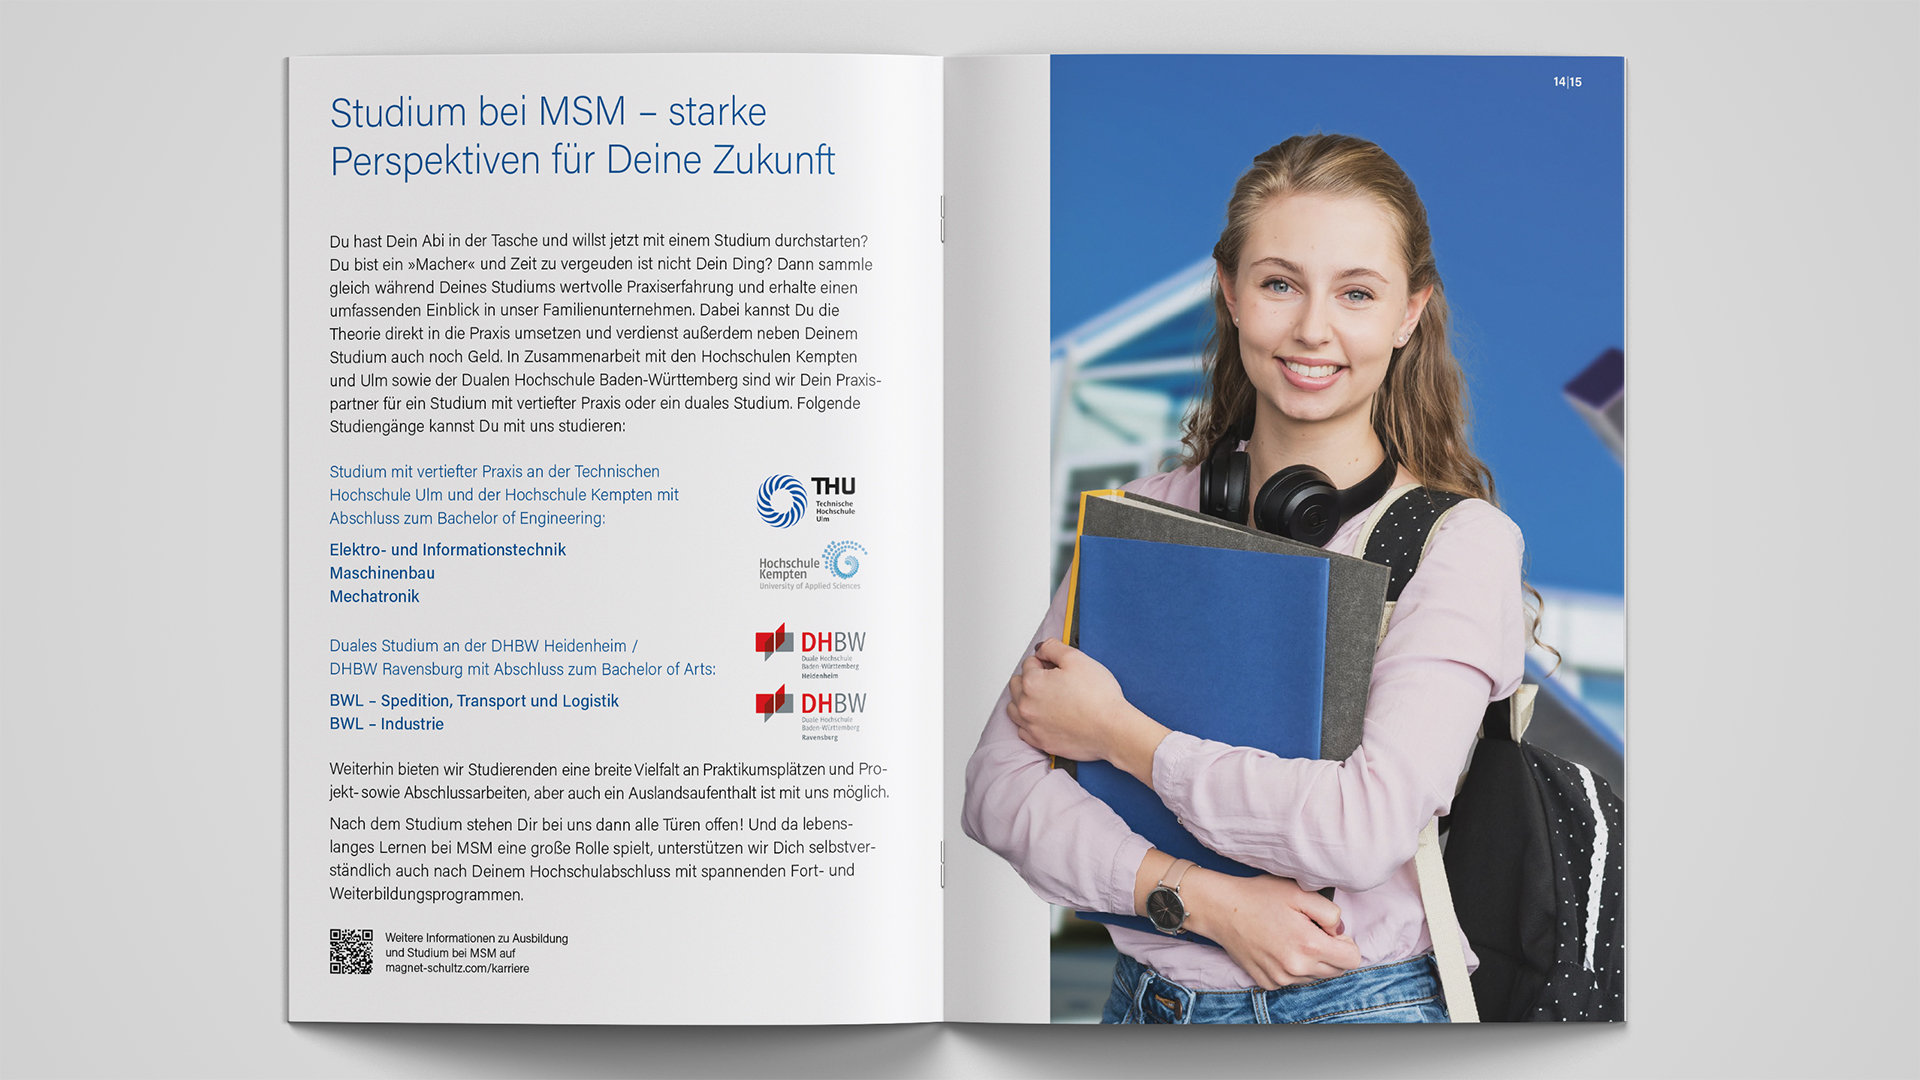 Moderne Ausbildungsbroschüre für Magnet-Schultz GmbH & Co. KG in Memmingen von der Designagentur das formt aus München